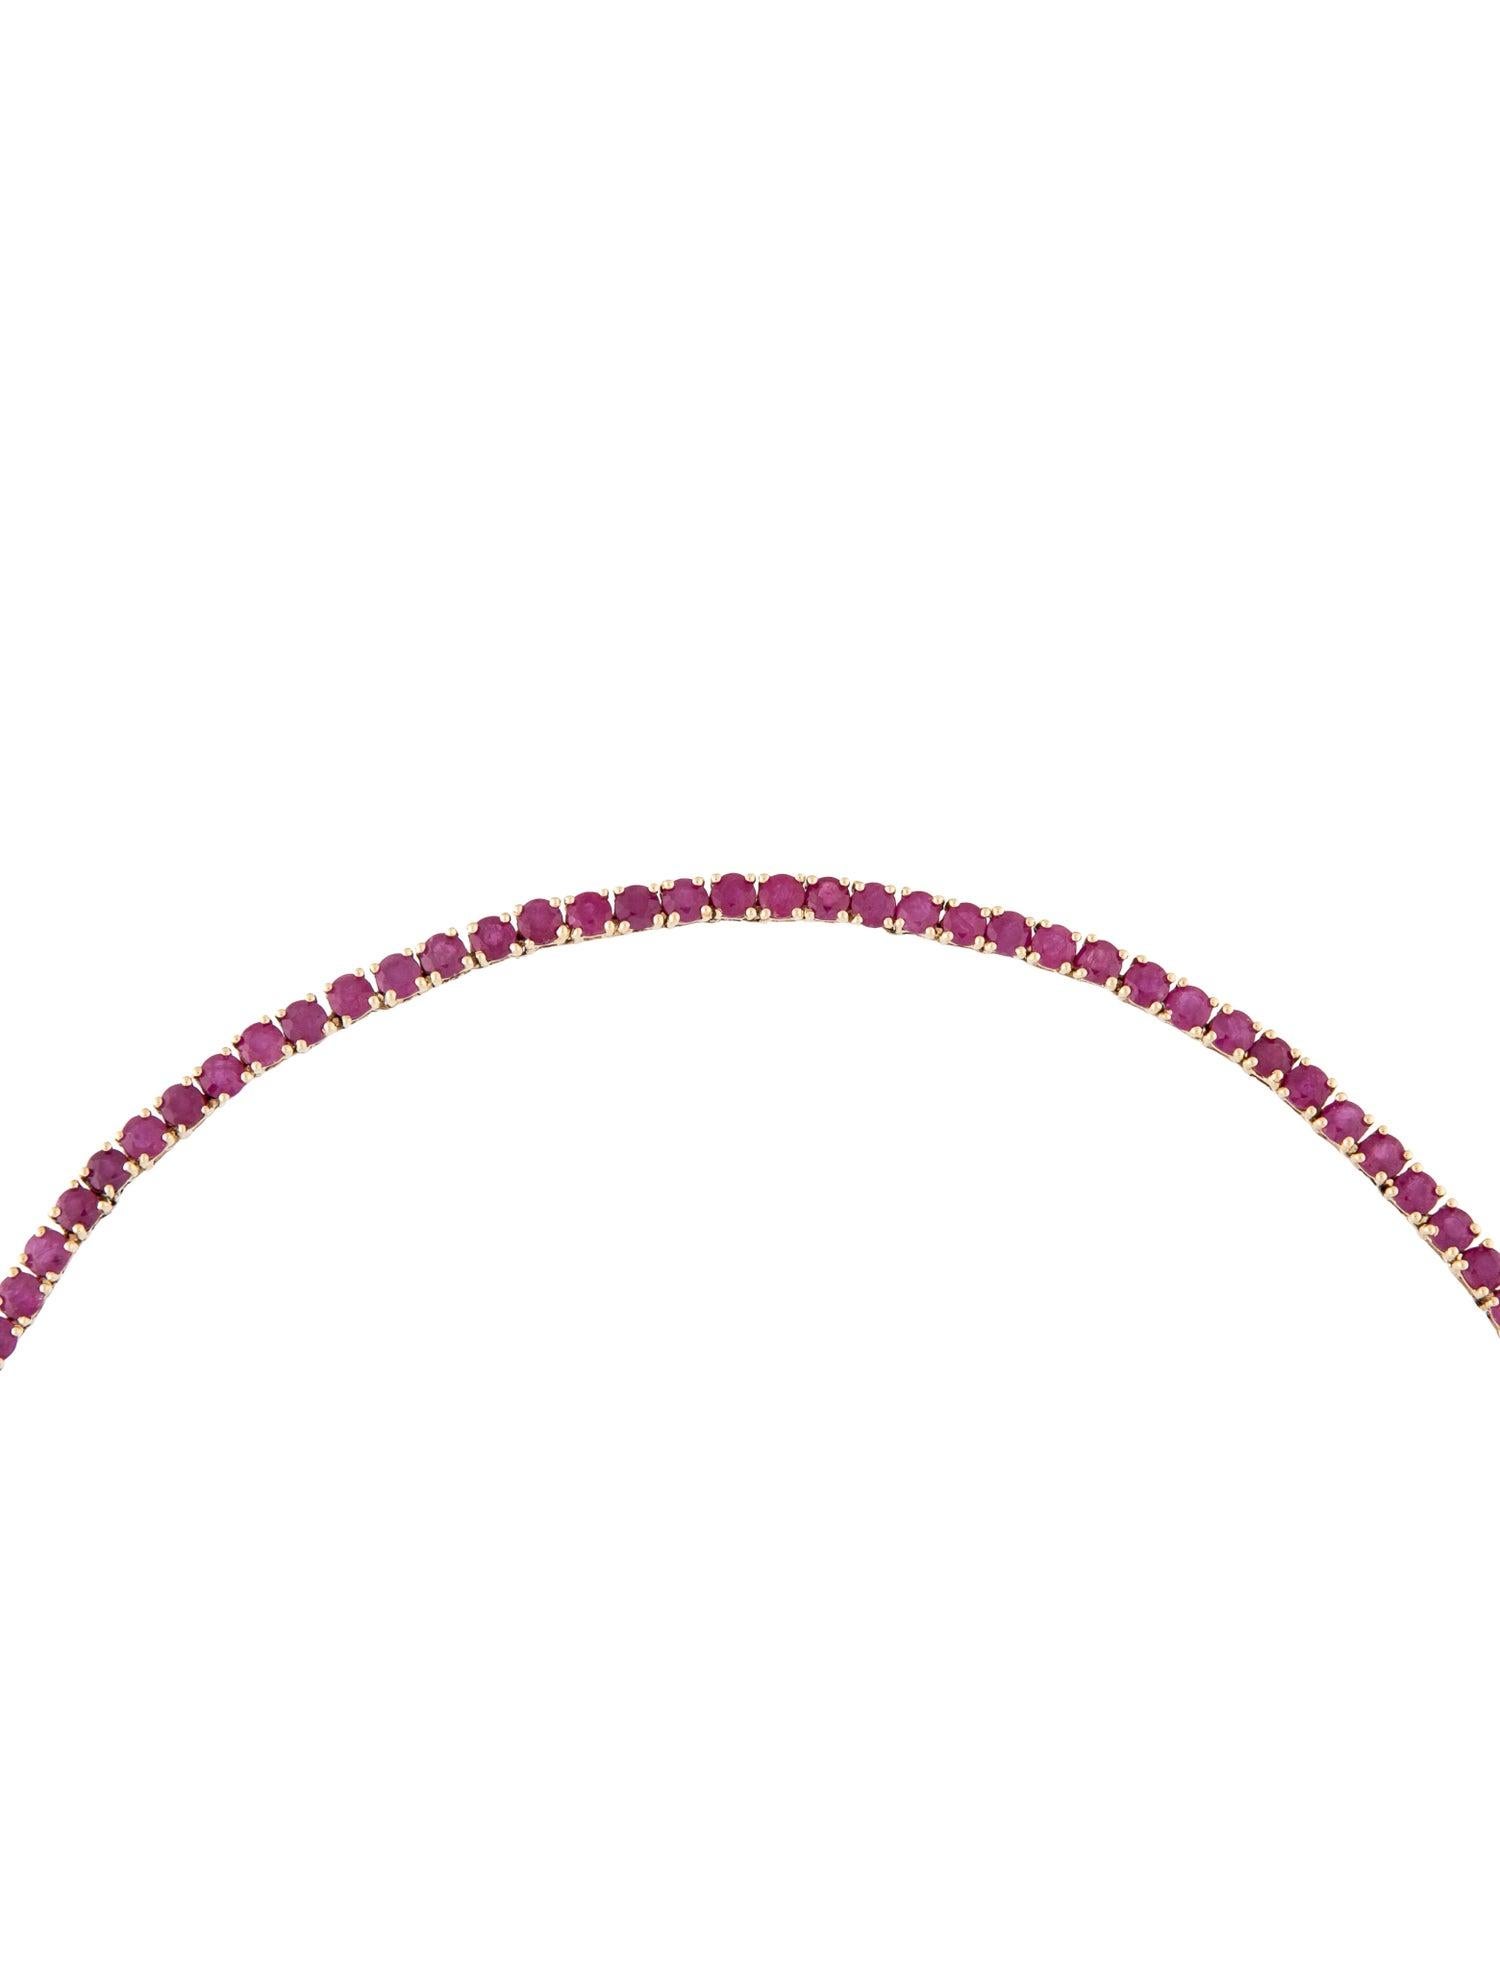 Brilliant Cut Luxury 14K 10.17ctw Ruby Collar Necklace - Exquisite Gemstone Statement Piece